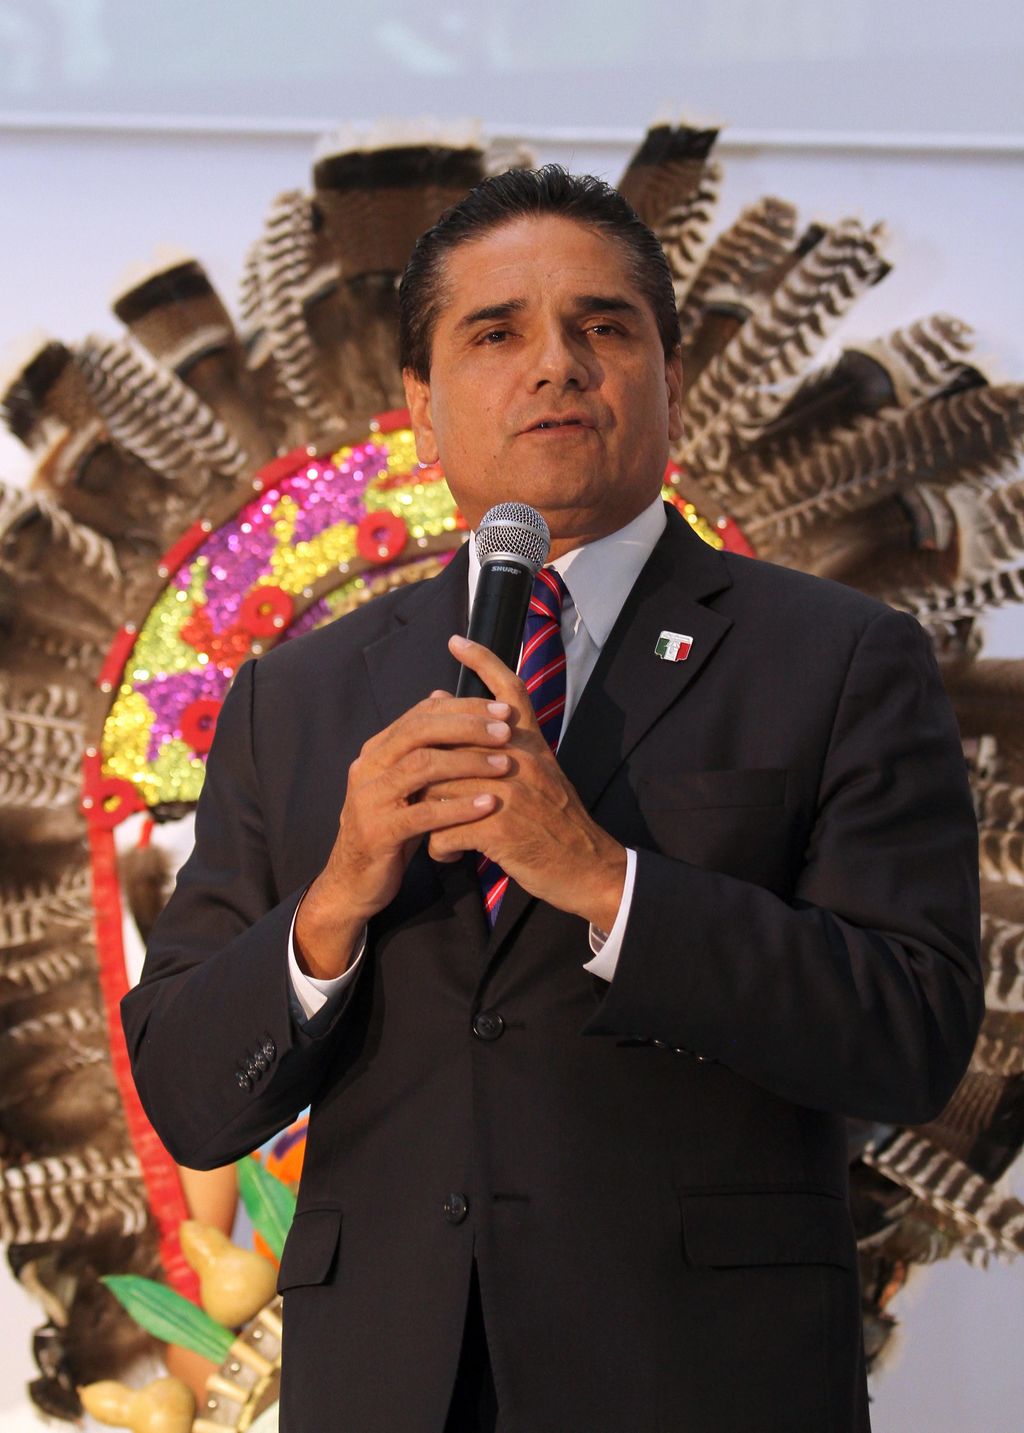 El gobernador electo de Michoacán, dijo que le preocupa la debilidad financiera por la deuda tan alta que presenta el estado y que asciende a 17 mil 500 millones de pesos. (ARCHIVO)